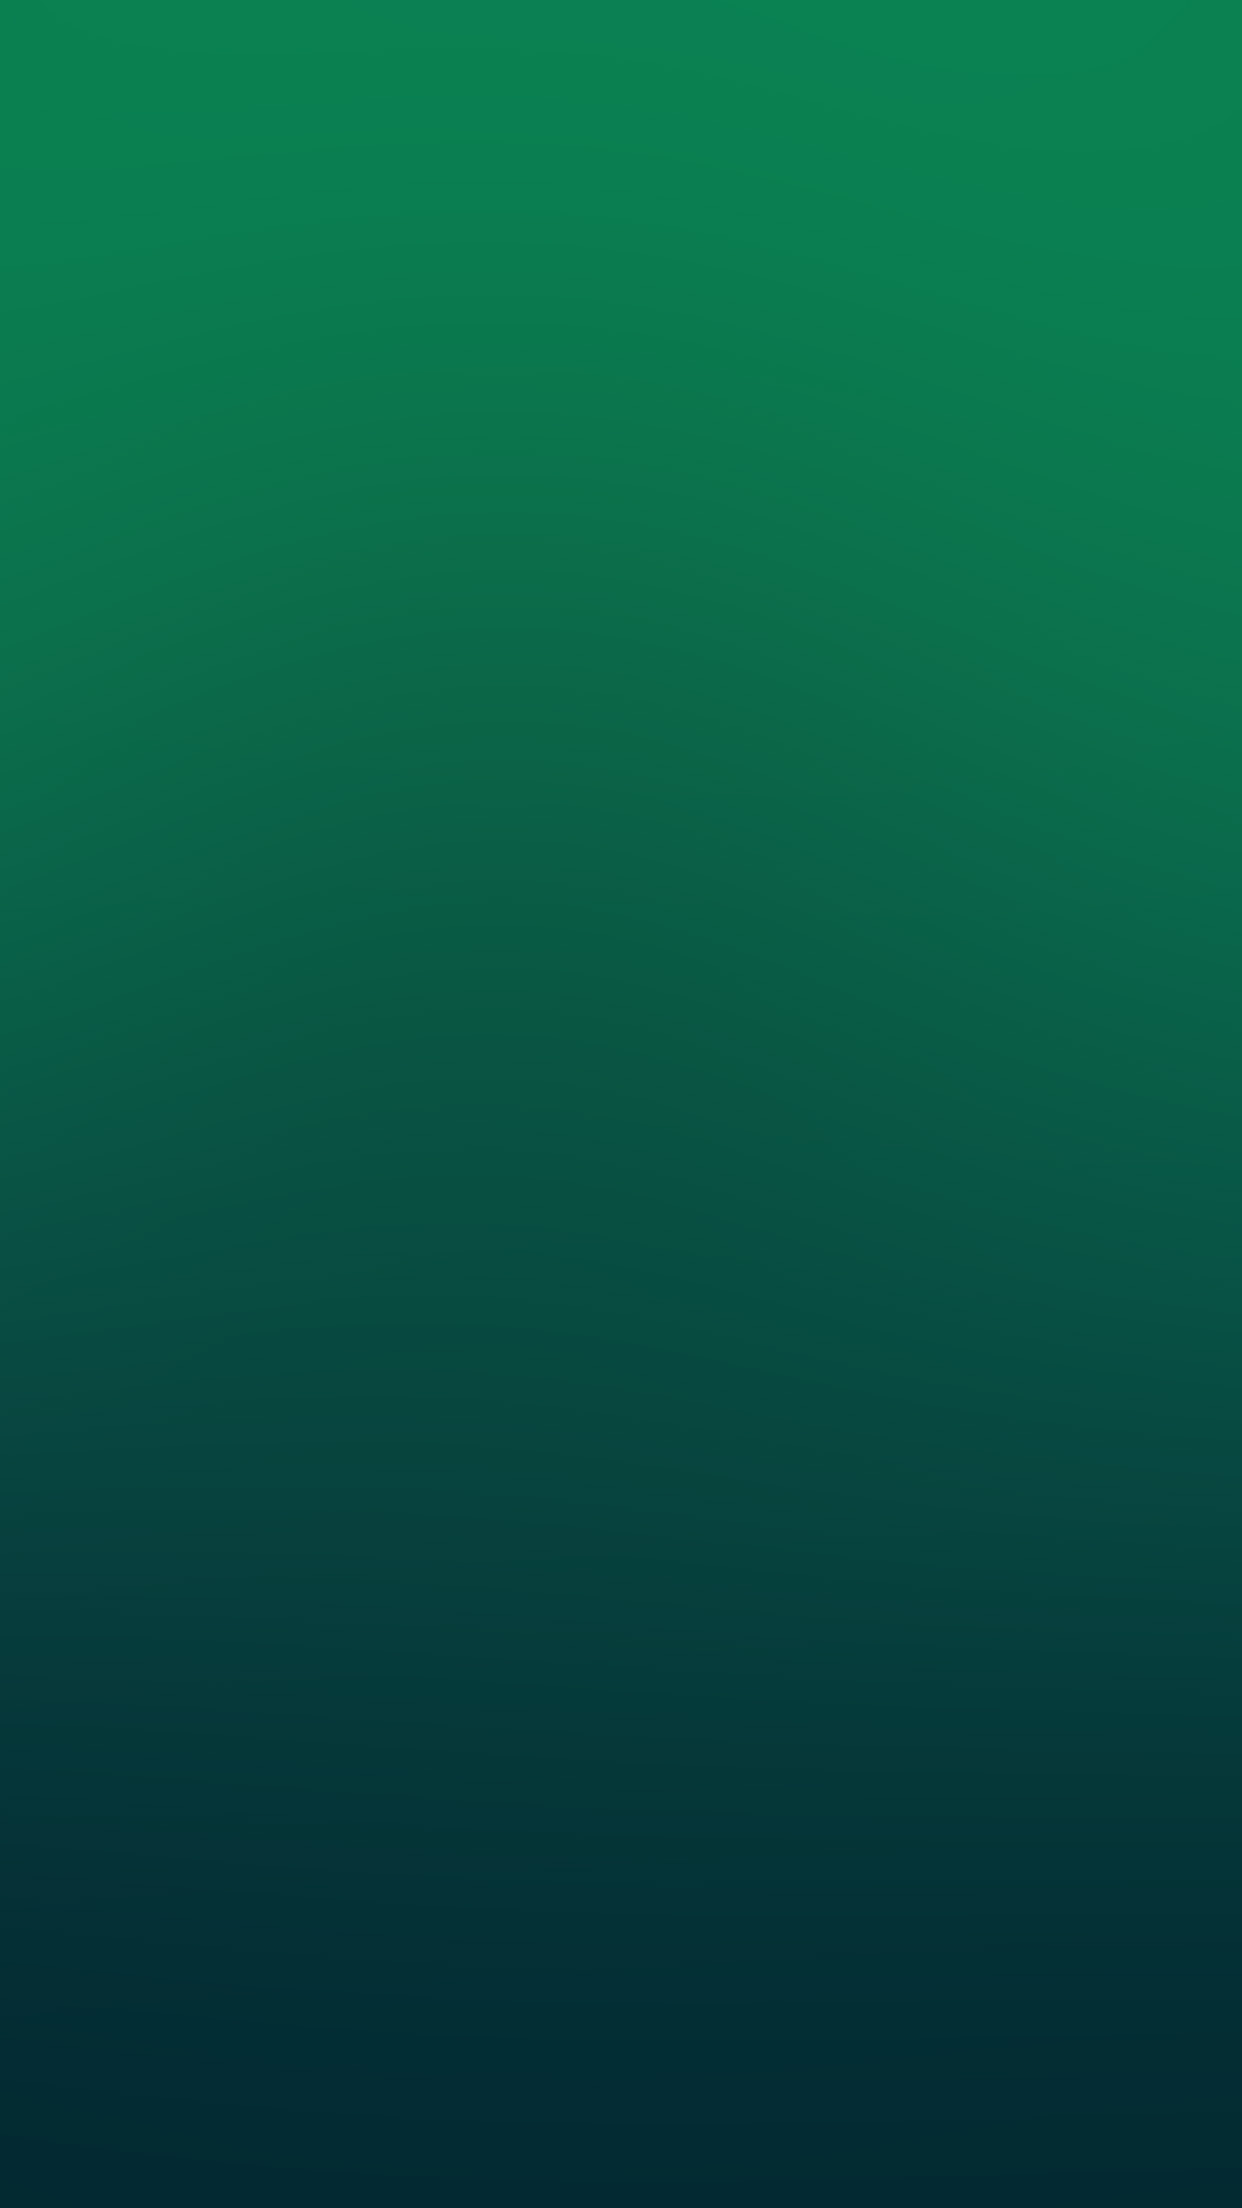 Iphone X Wallpaper Green - HD Wallpaper 